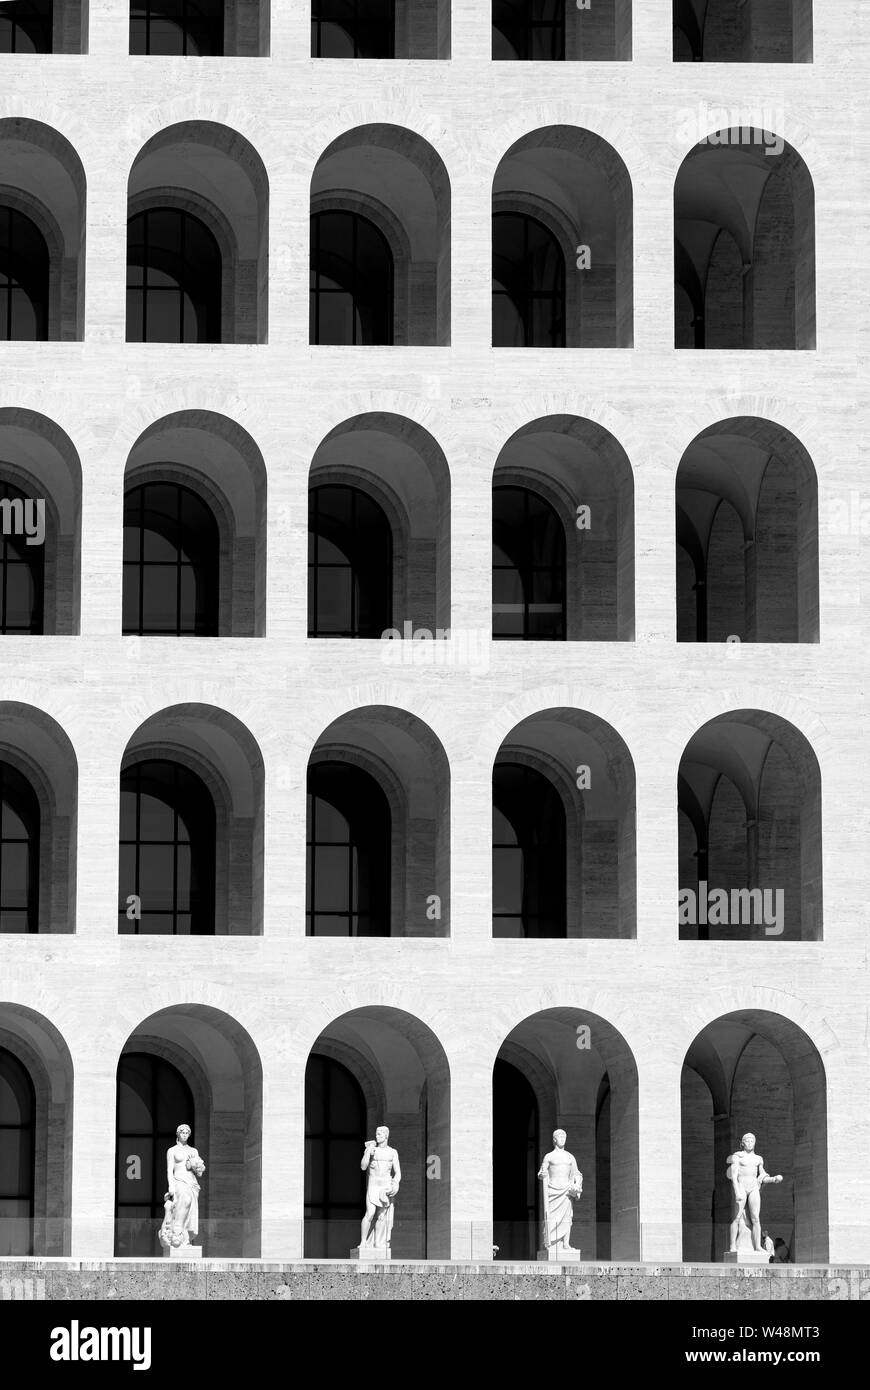 The Palazzo della Civilta del Lavoro, designed in 1937 by Marcello Piacentini, for the Esposizione Universale Roma or EUR, Rome, Italy. Stock Photo